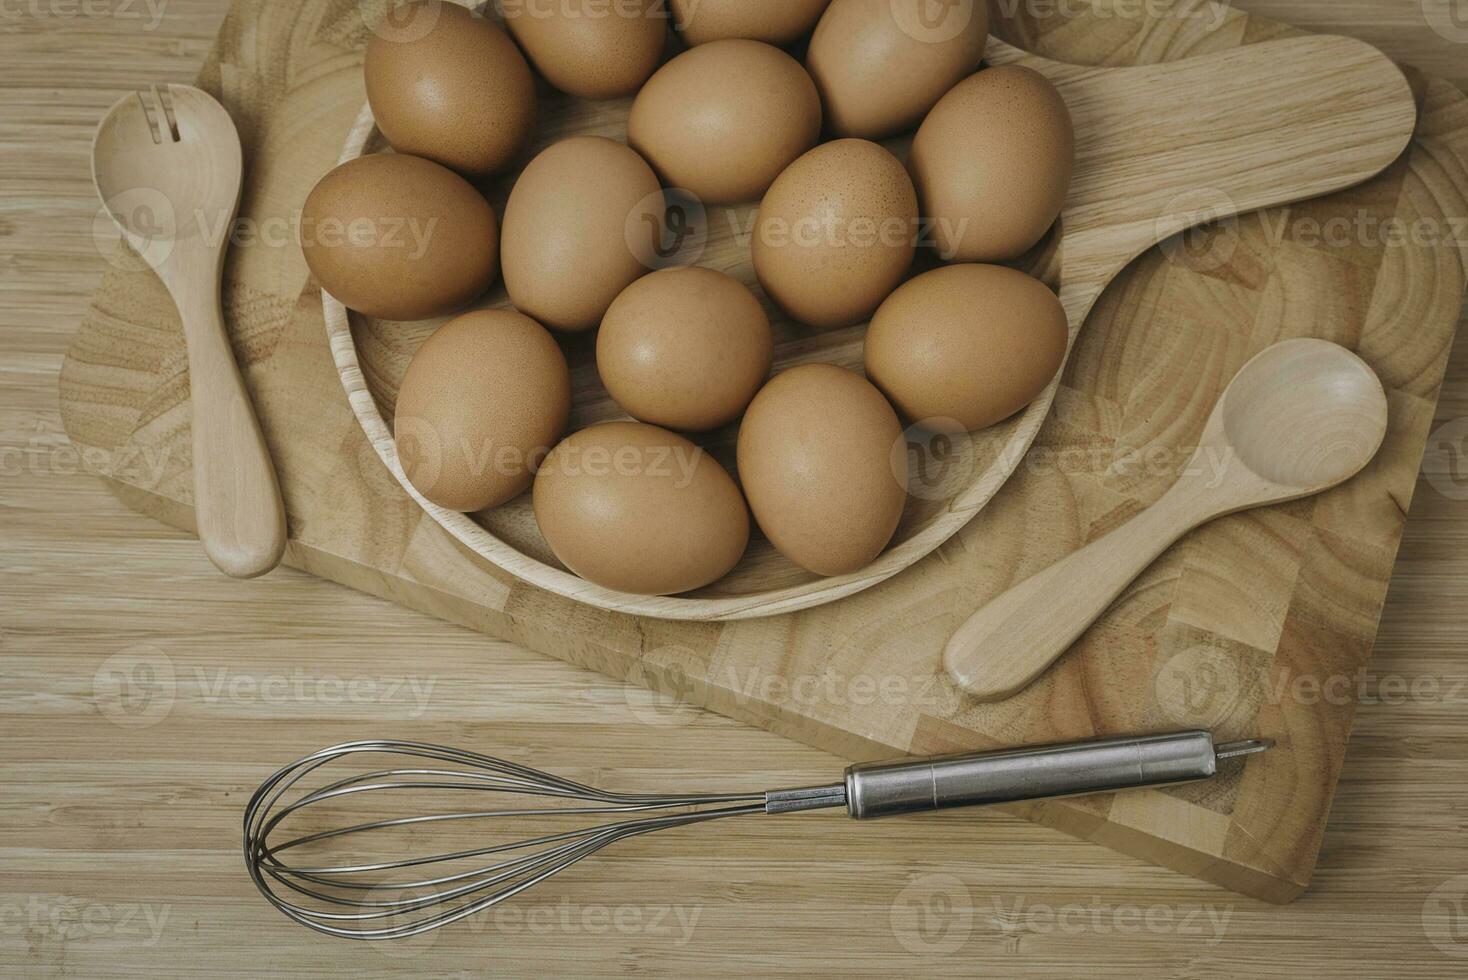 cucina metallo filo e crudo uova su il di legno tavola foto